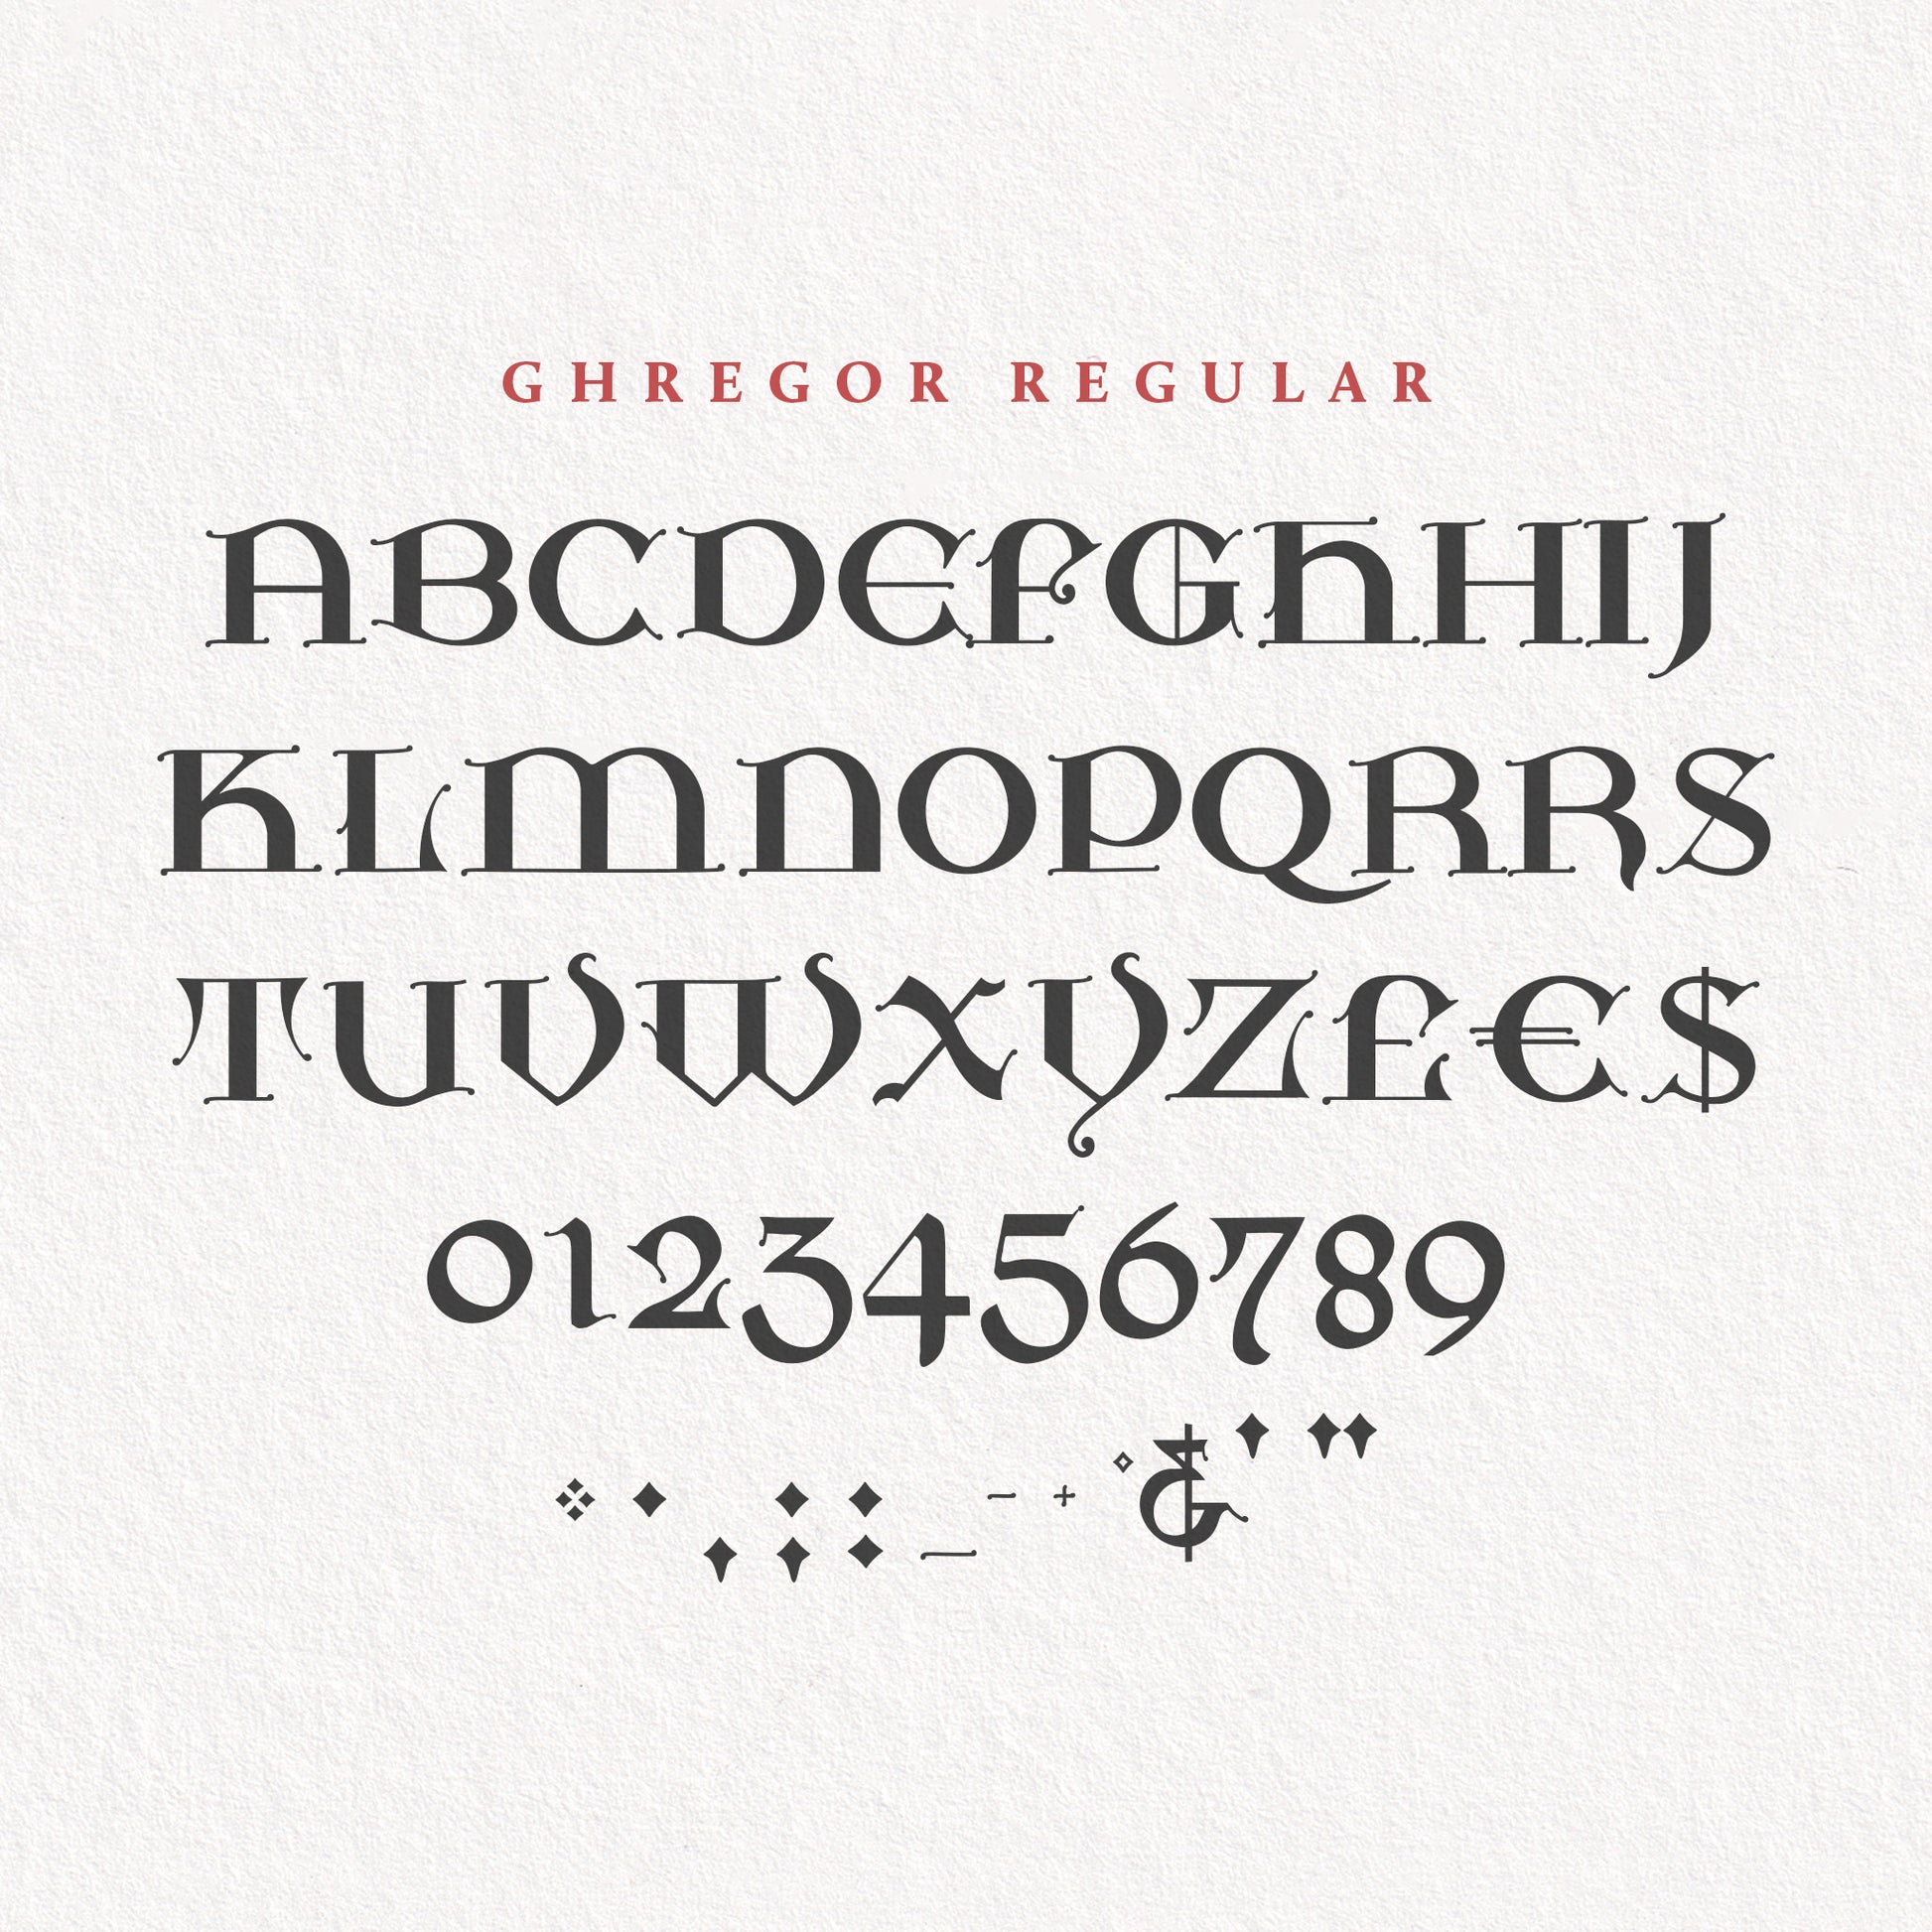 All glyphs of Ghregor Regular font set against a light paper background